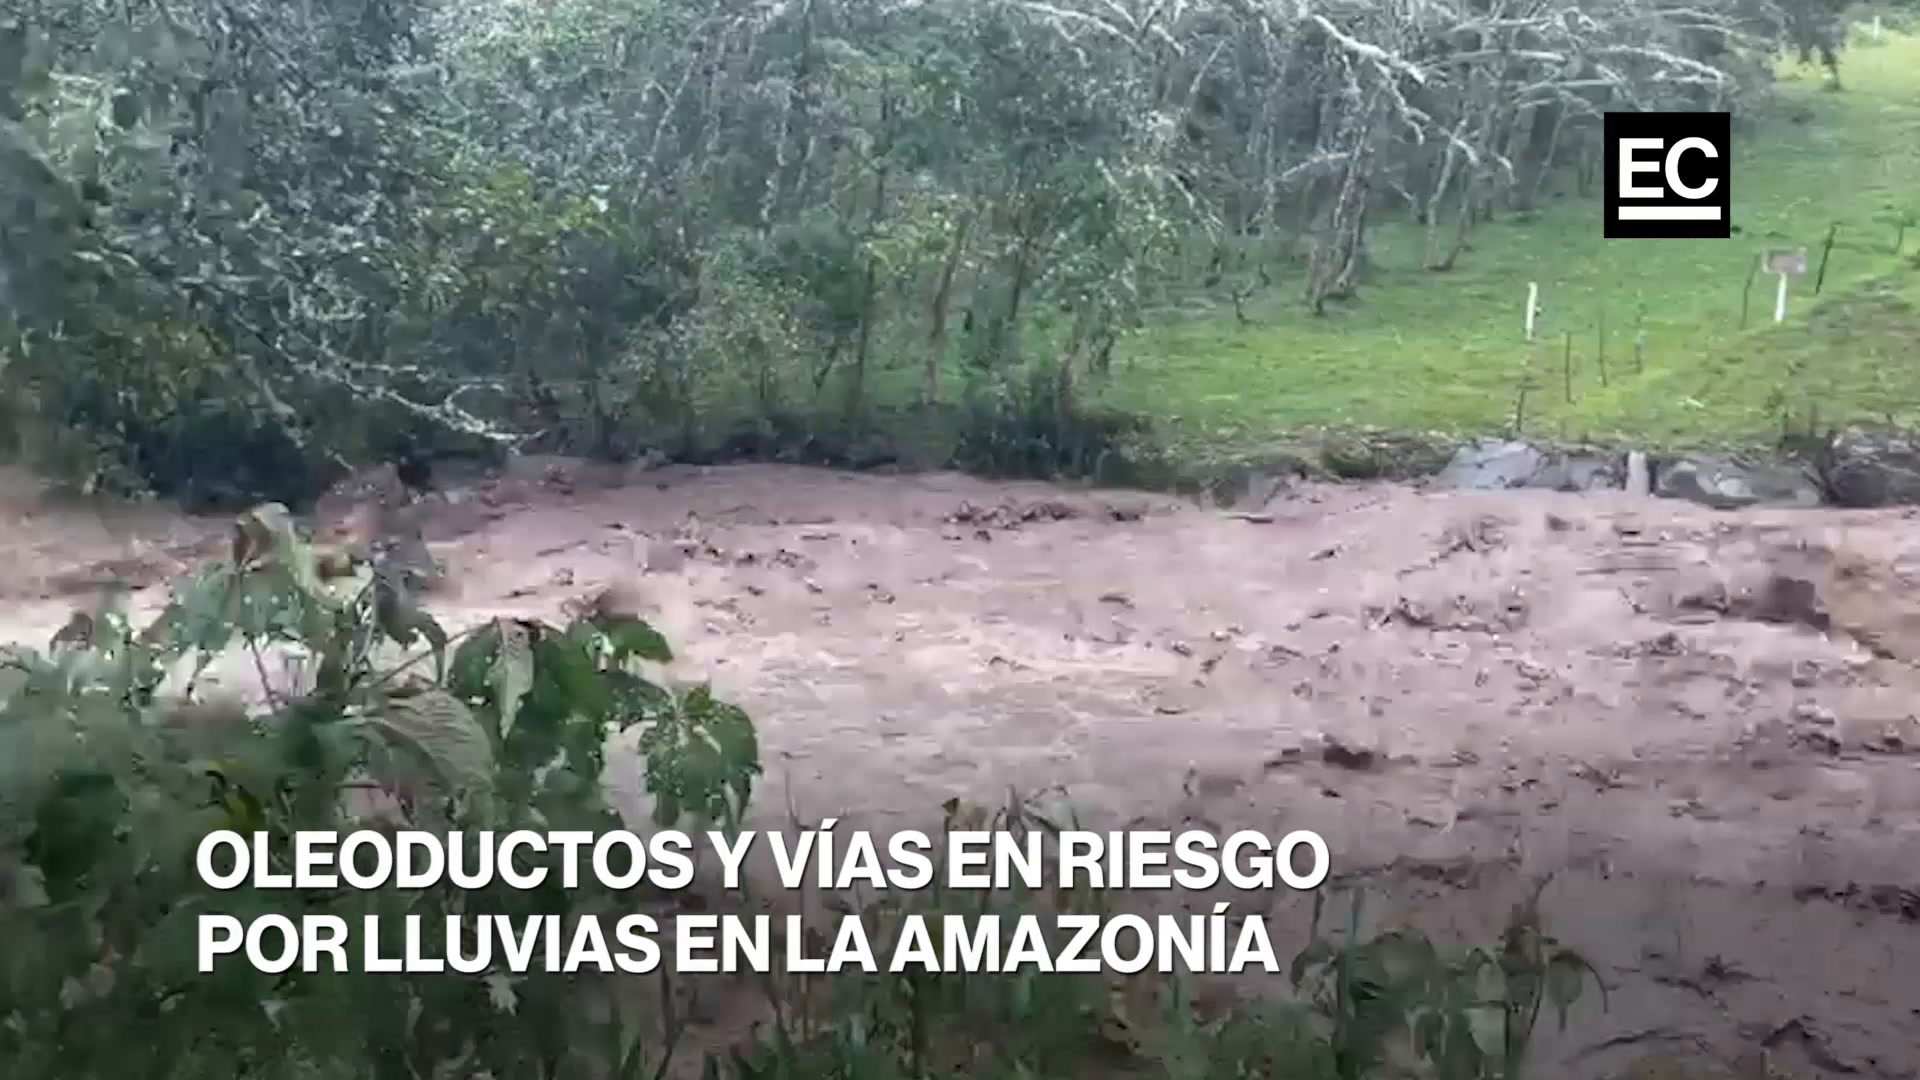 La Amazonía ecuatoriana registra sus peores lluvias en 10 años. El 19 de julio de 2021 se dieron fuertes precipitaciones en Napo y Orellana. Infraestructura vial, eléctrica, petrolera y bienes de personas están en riesgo. Captura video